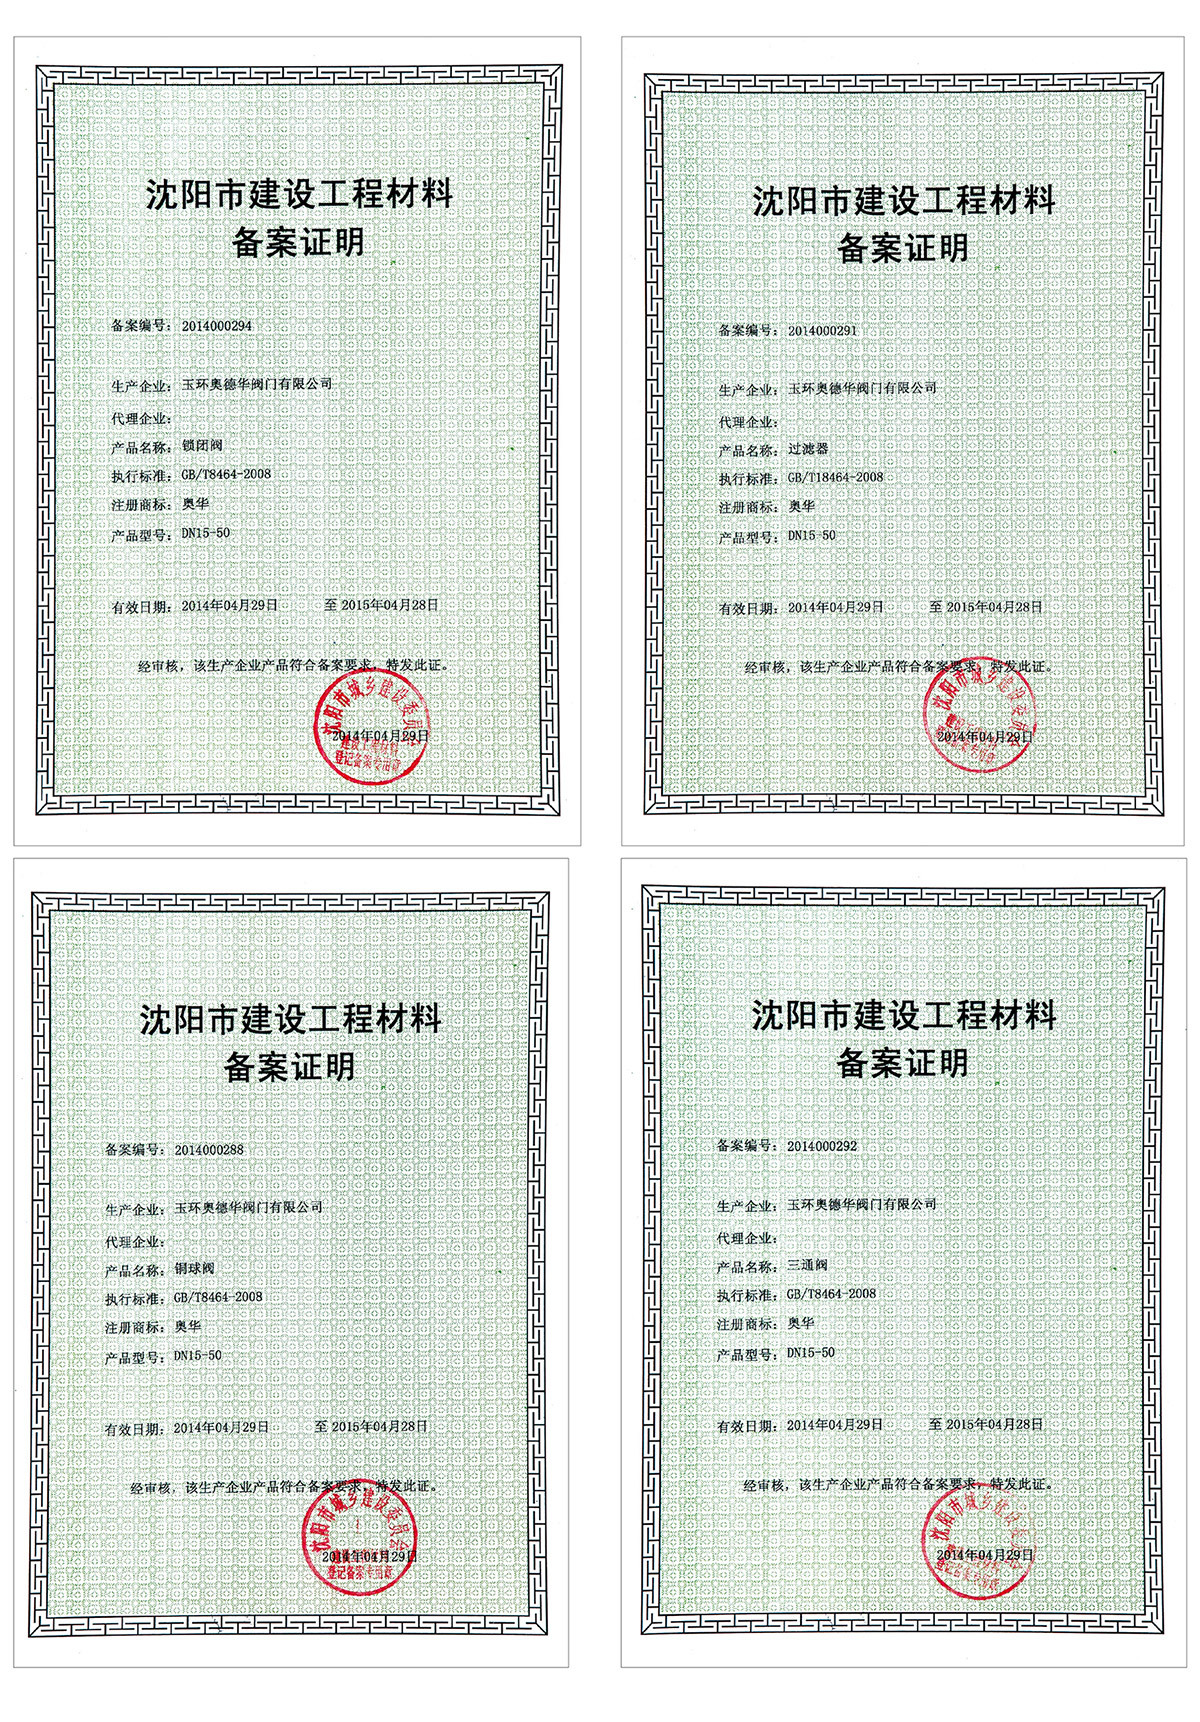 Свидетельство о регистрации материалов строительного проекта в Шэньяне2